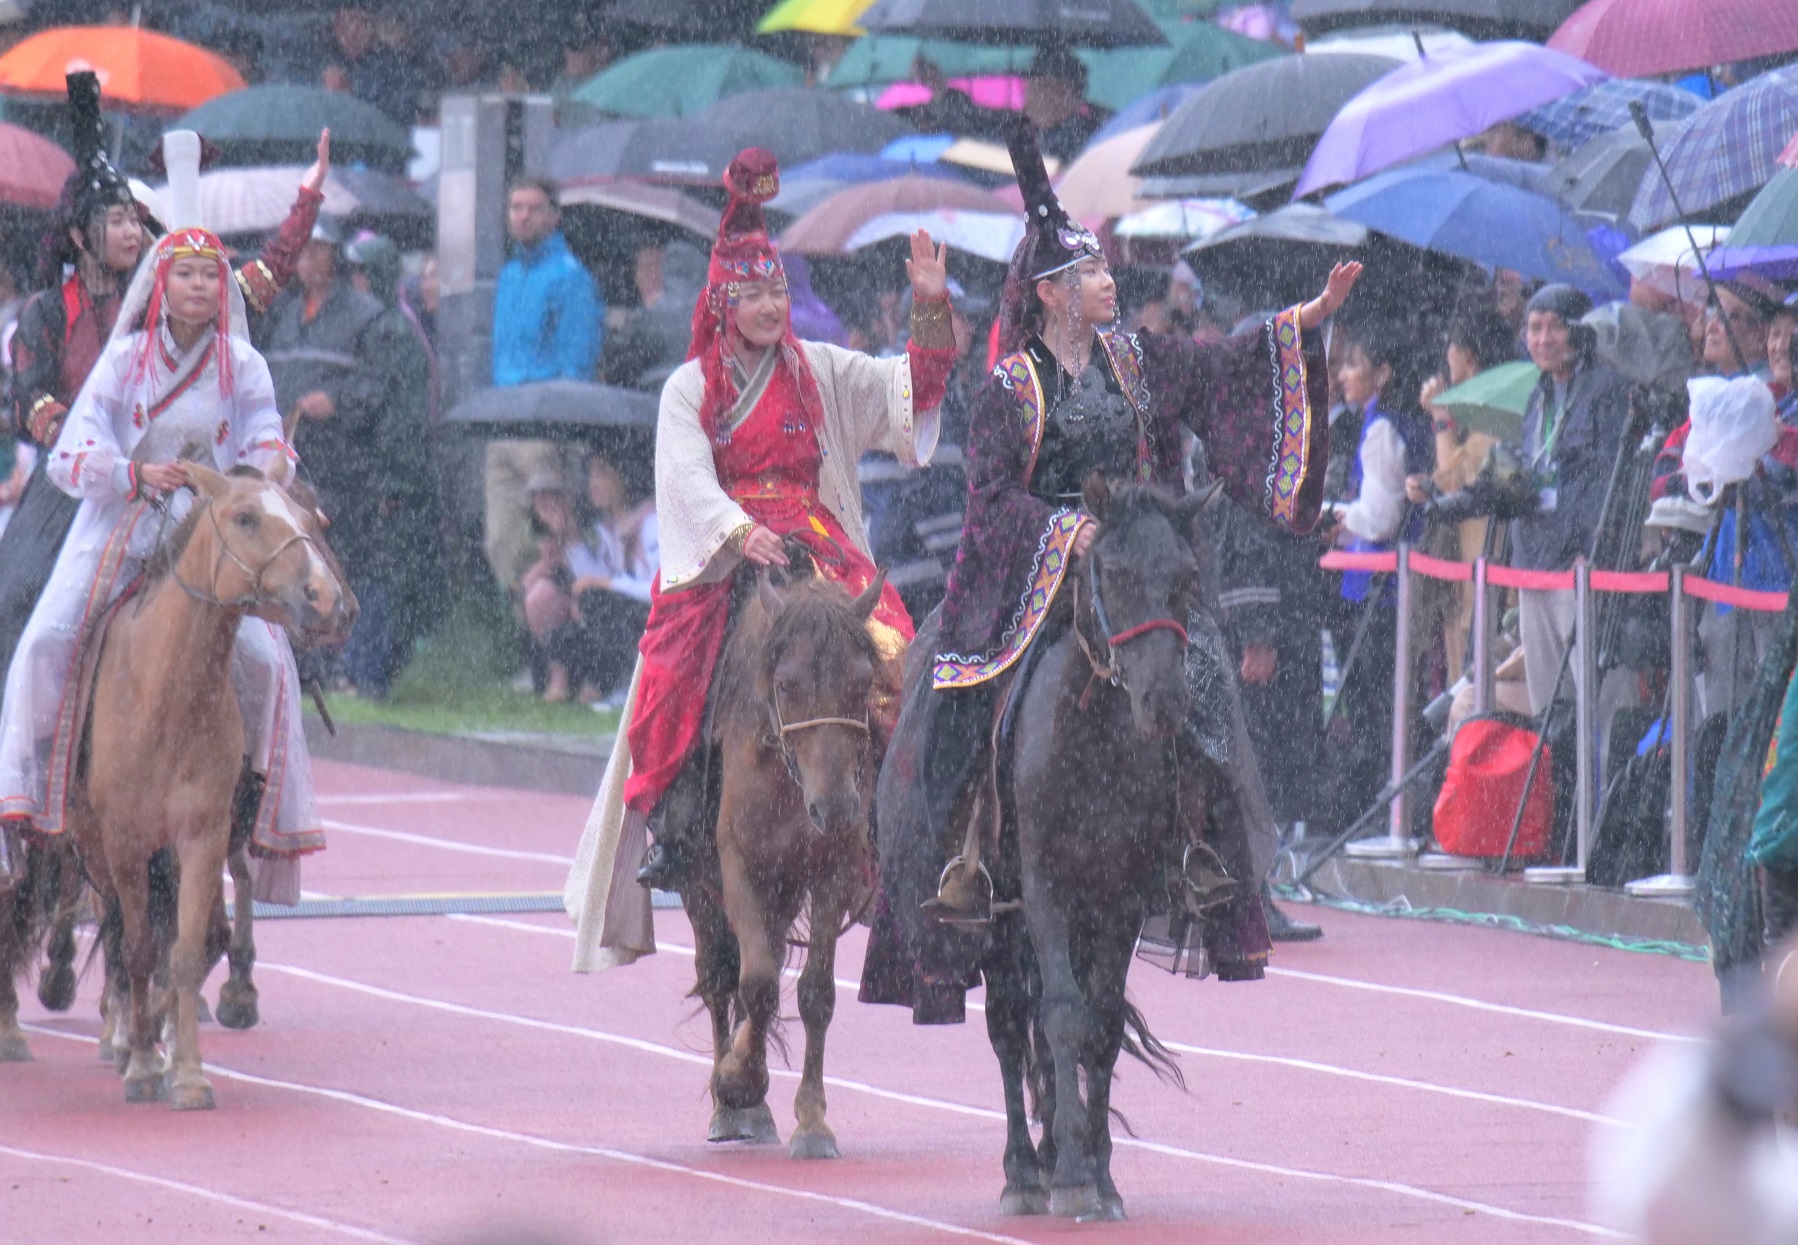 costume parade in the Naadam...